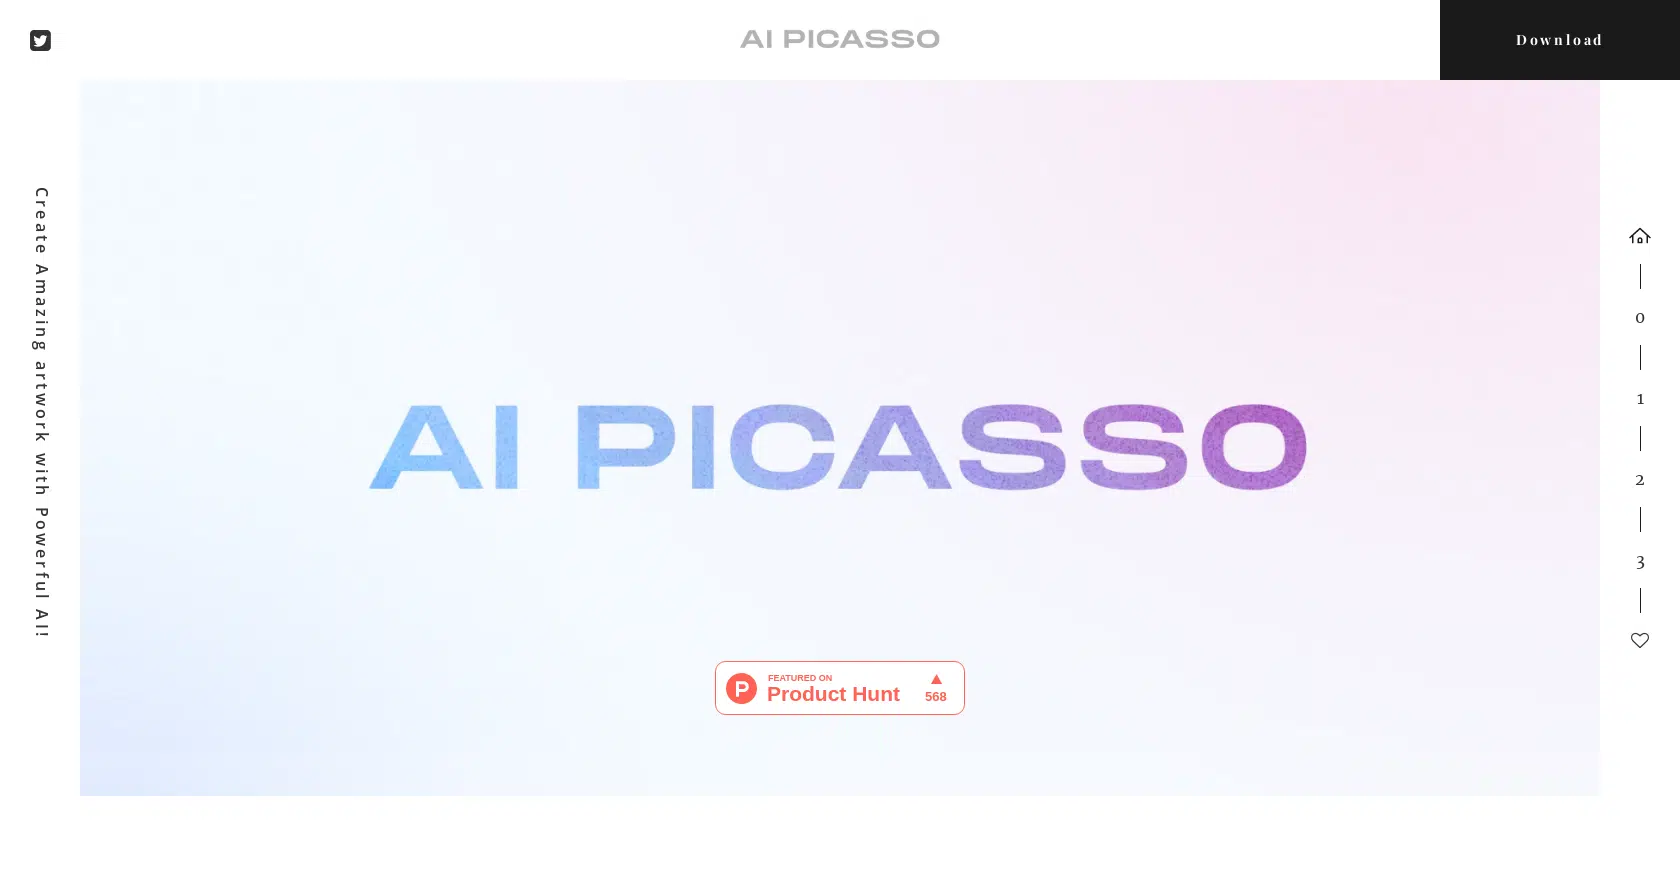 AI Picassowebsite picture